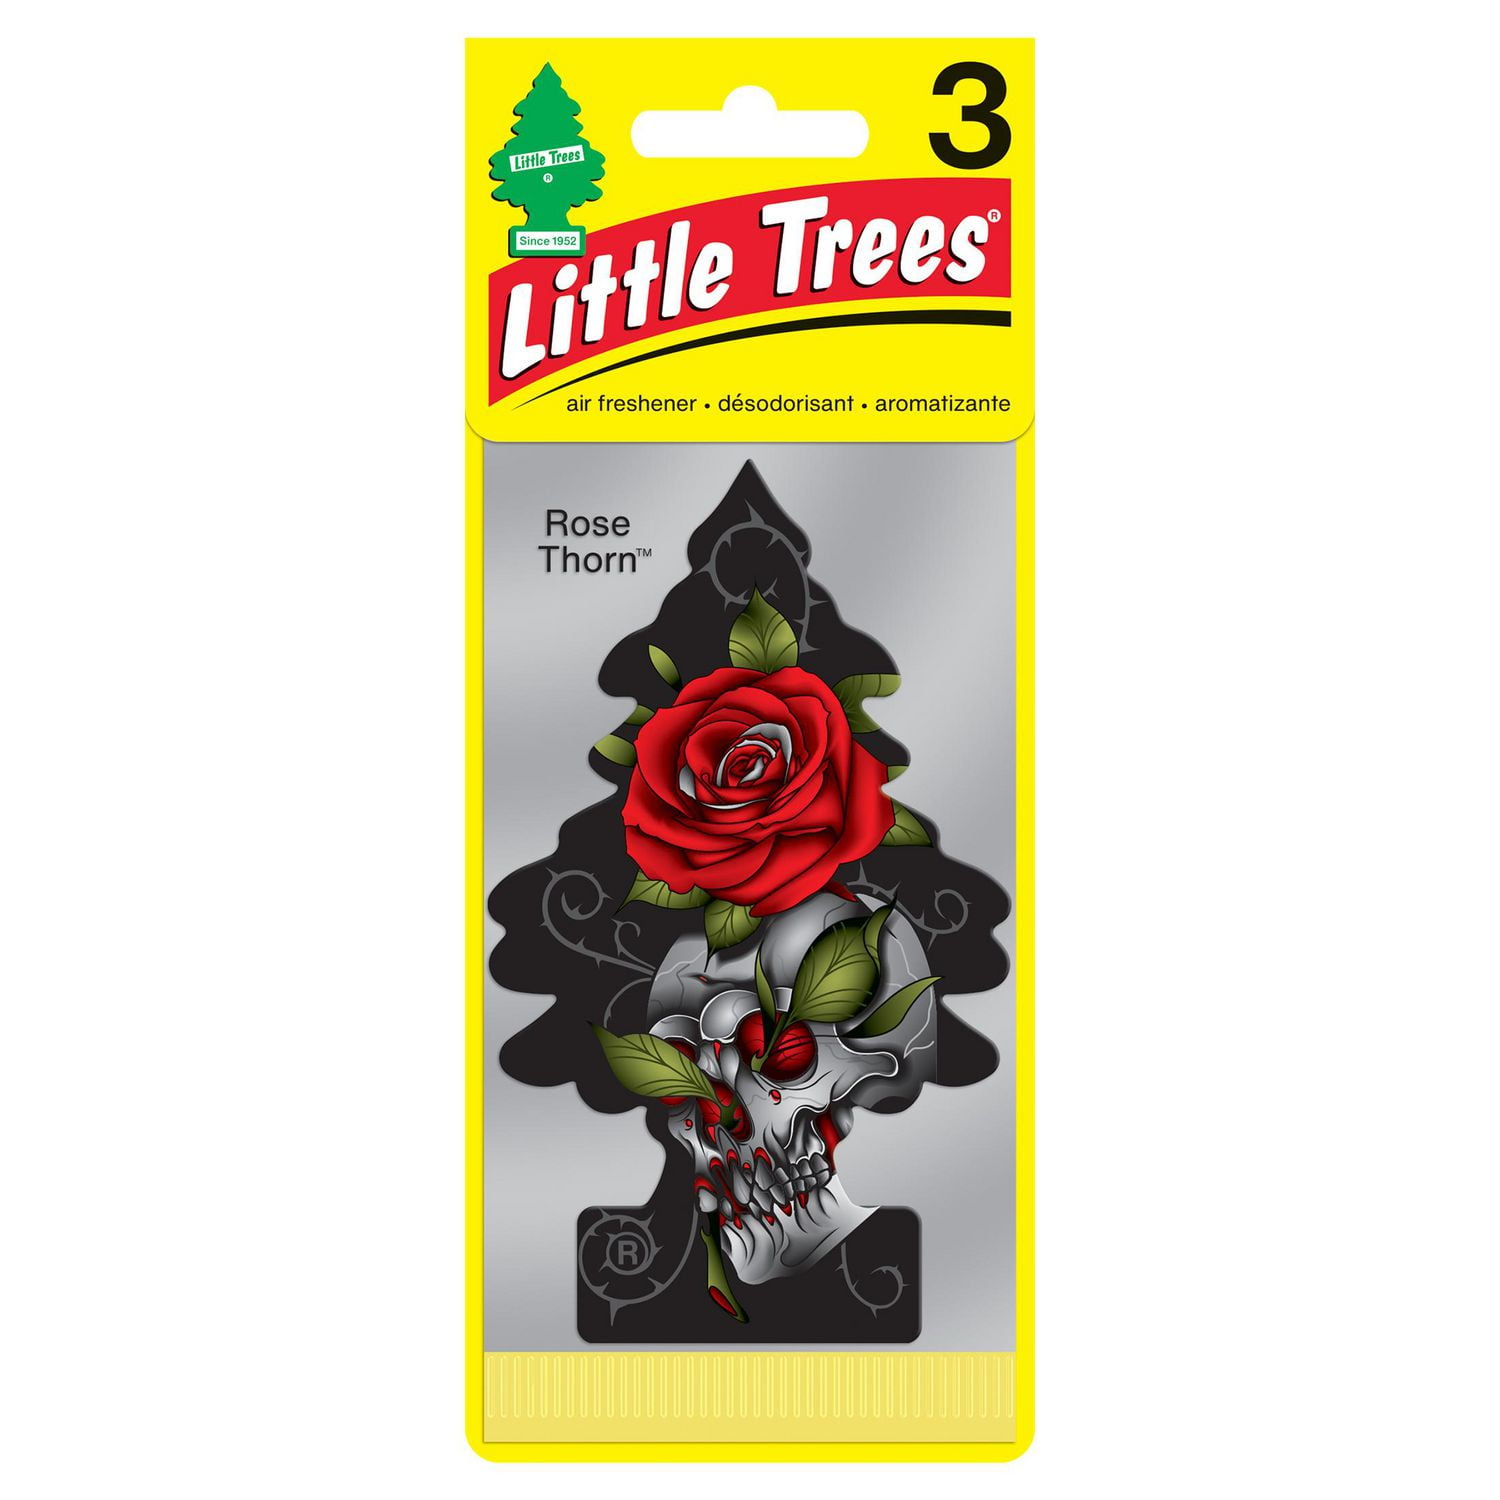 LITTLE TREES air freshener Rose Thorn 3-Pack, LT Rose Thorn 3-Pack